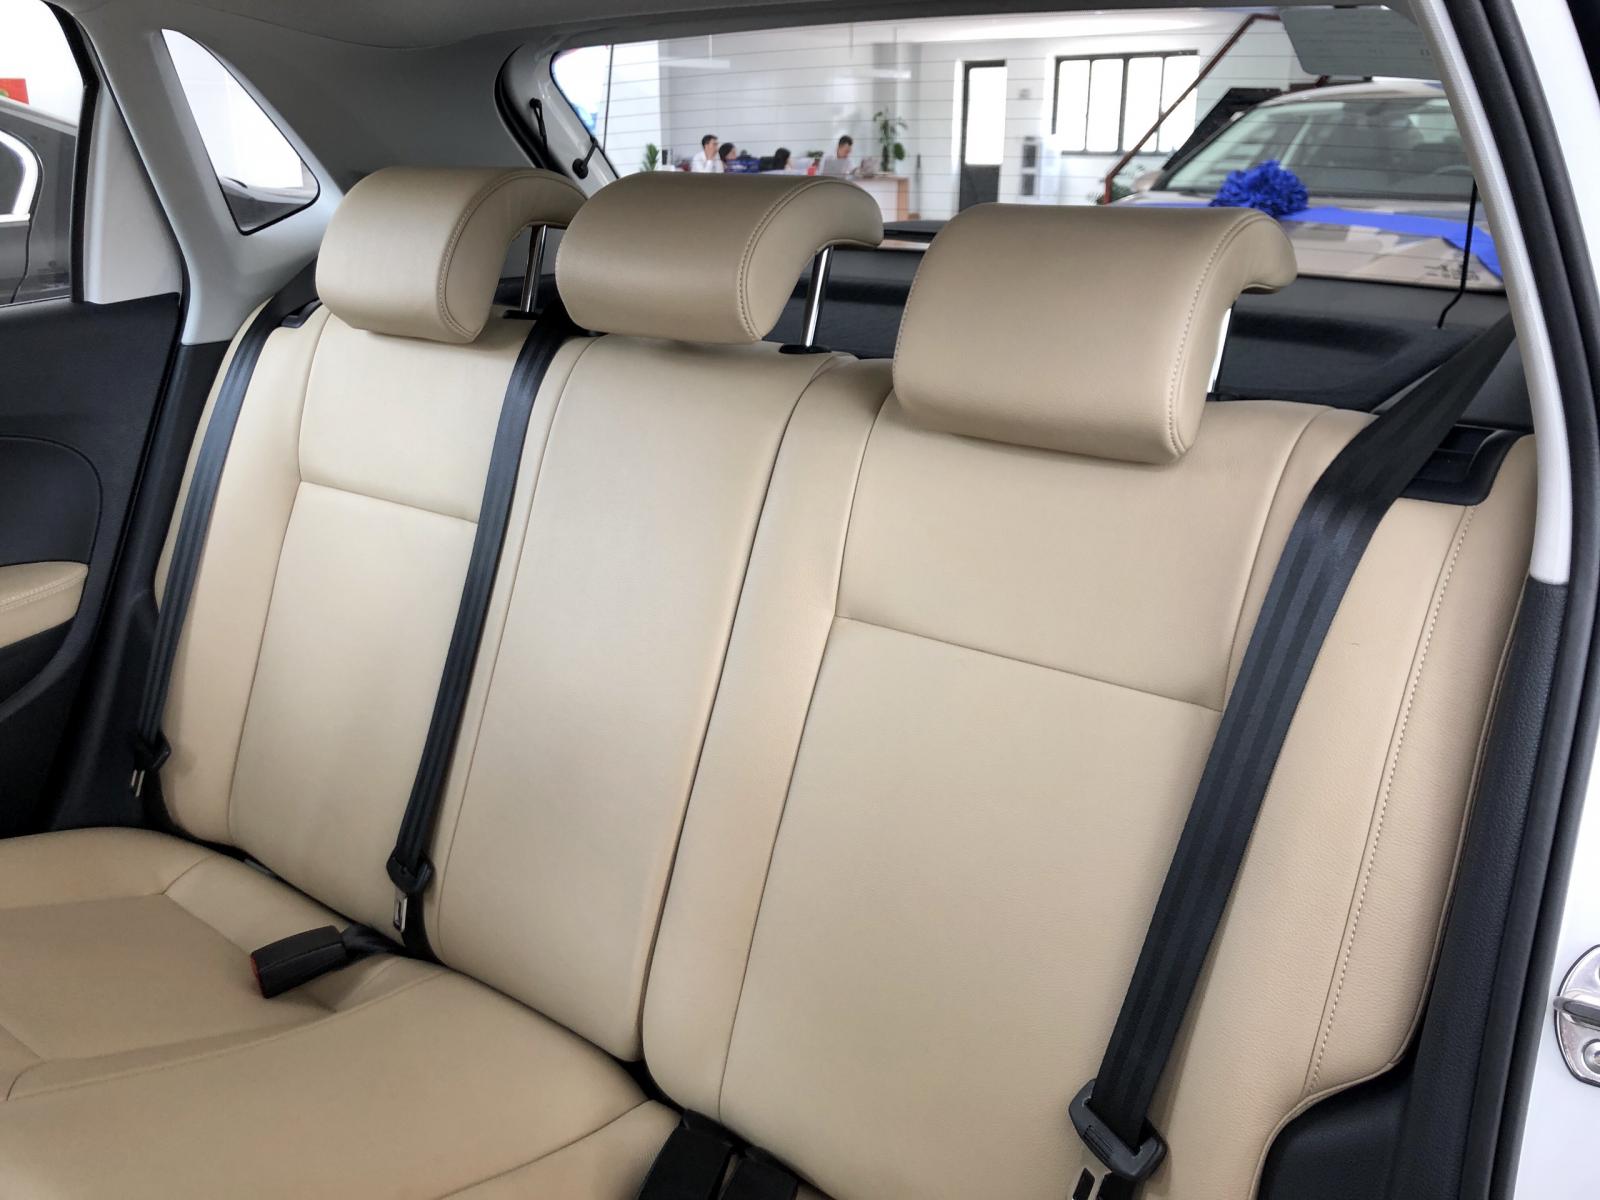 Volkswagen Polo Hatchback 2020, màu trắng tặng quà hấp dẫn khi mua xe-3